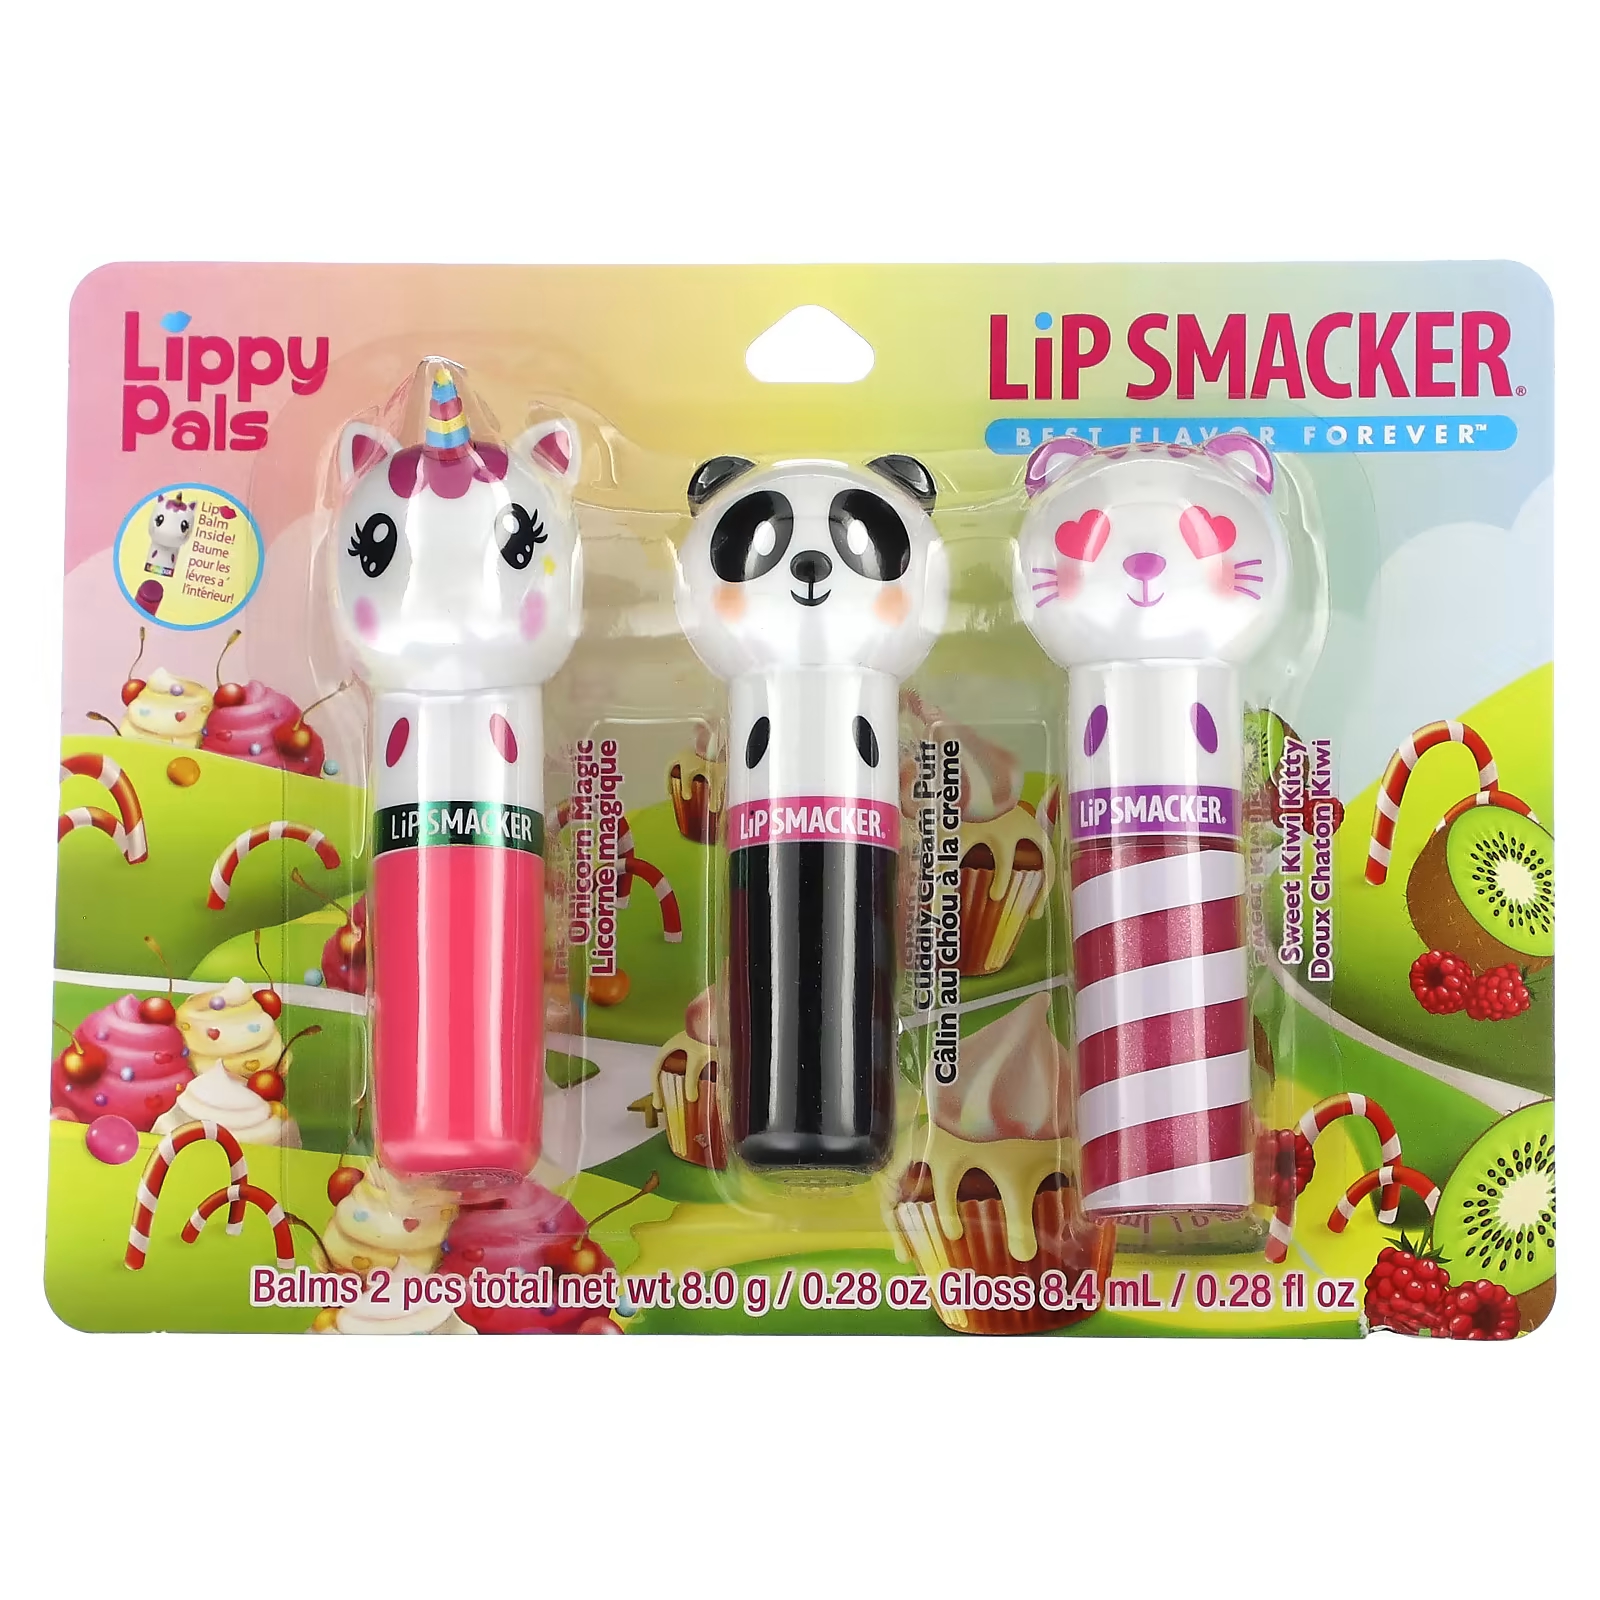 Бальзам для губ Lip Smacker Lippy Pals, 3 шт 16.4 г aquaphor lip repair stick немедленное облегчение 2 палочки 0 17 унции 4 8 г